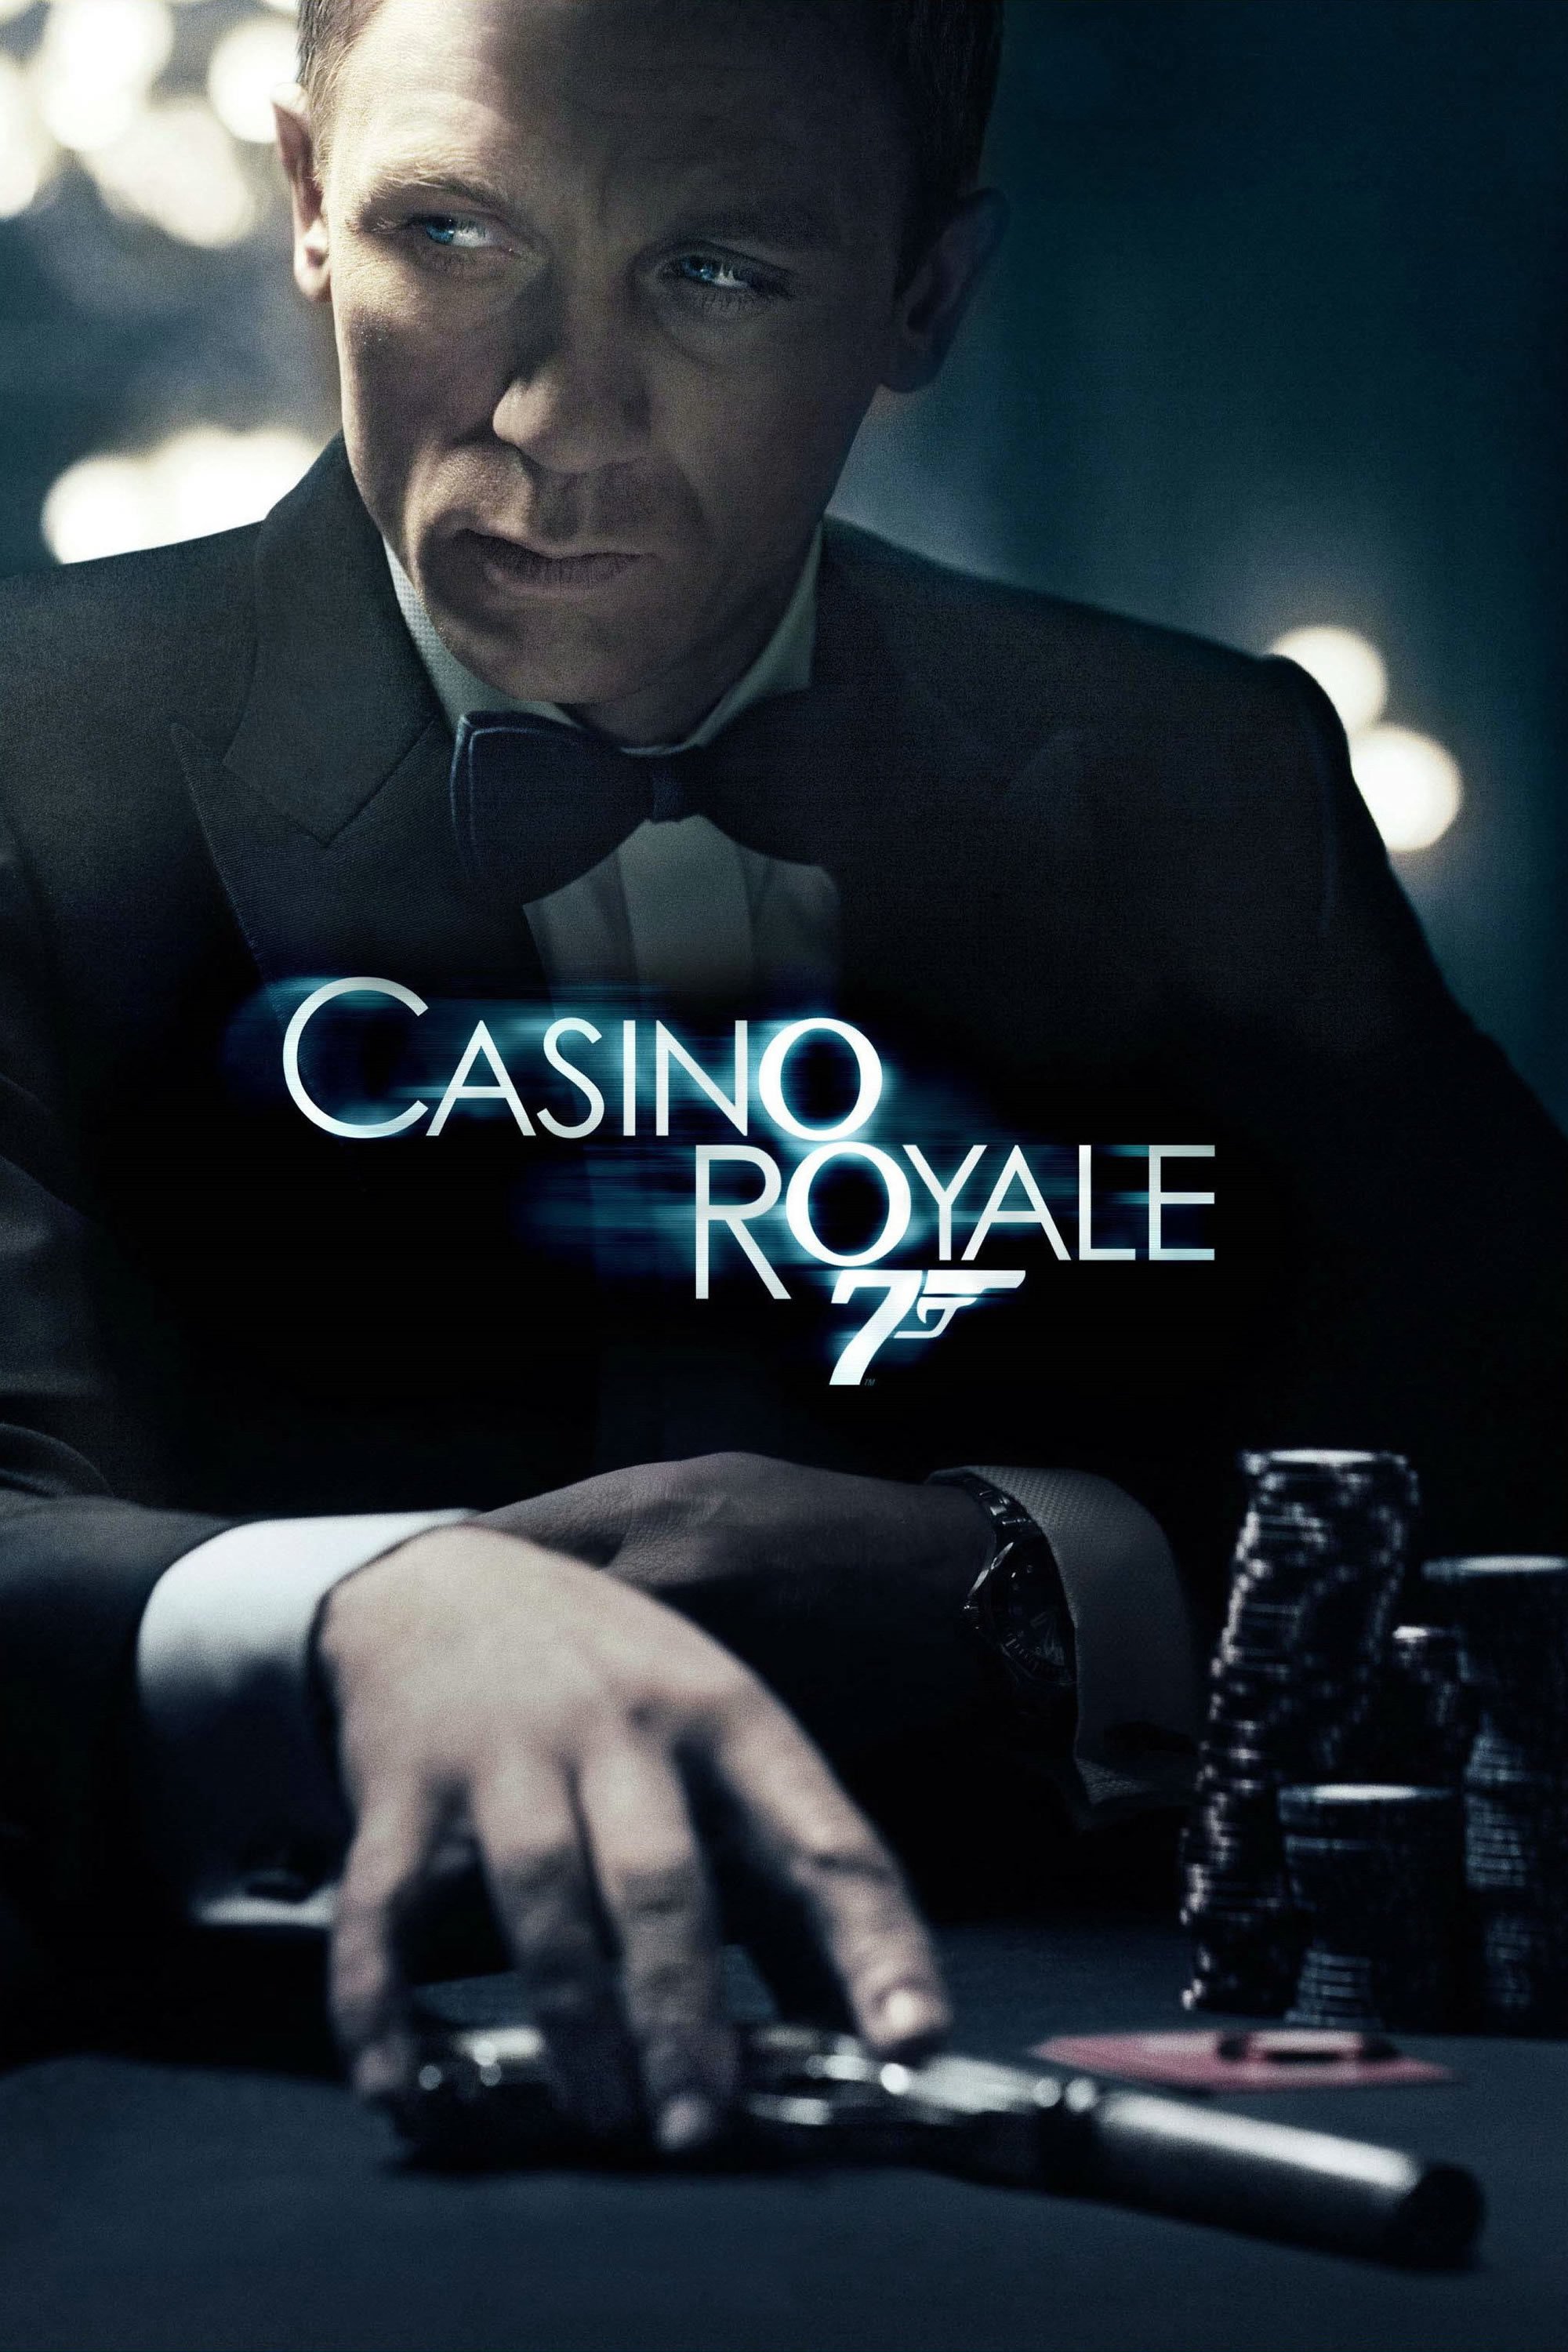 Casino royale com элантра игровые автоматы belatra играть бесплатно